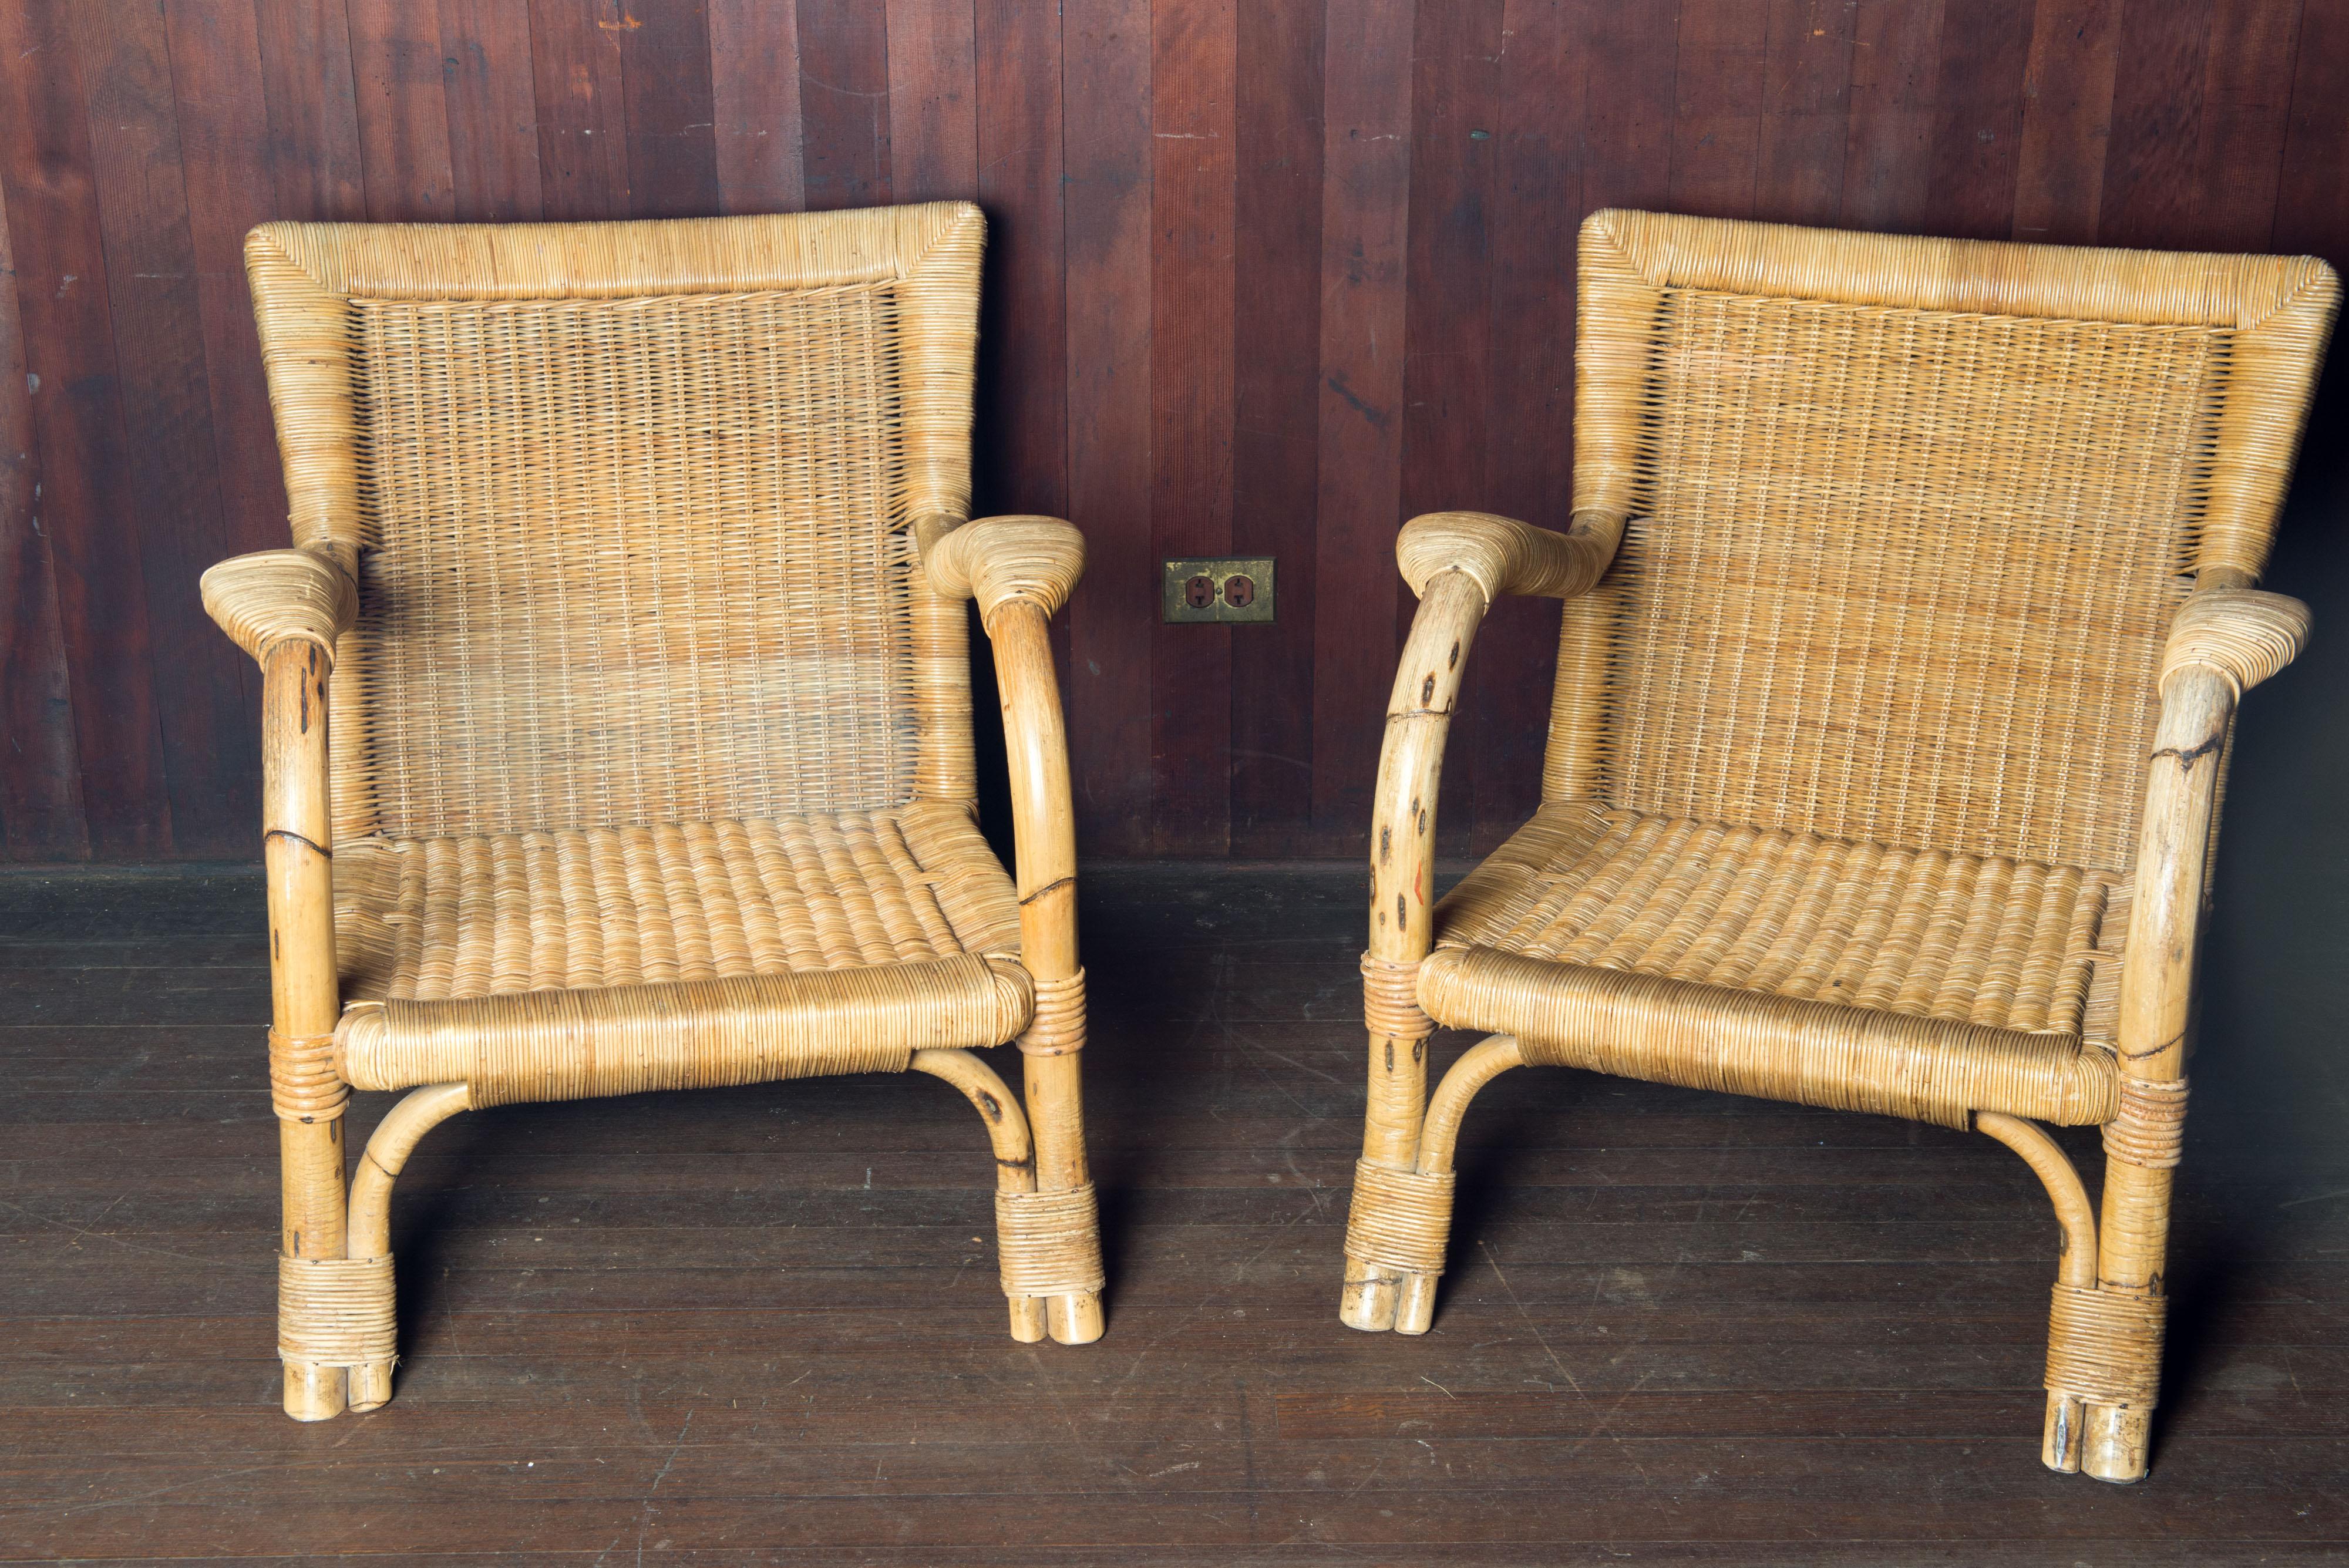 Paar große Arco Rattan- und Bambus-Loungesessel, hergestellt in Deutschland, gefunden in Paris. CIRCA 1970 im klassischen Stil der Jahrhundertmitte. Gut gemachte und solide Stücke der deutschen Firma Arco.
Sitz: 22,5